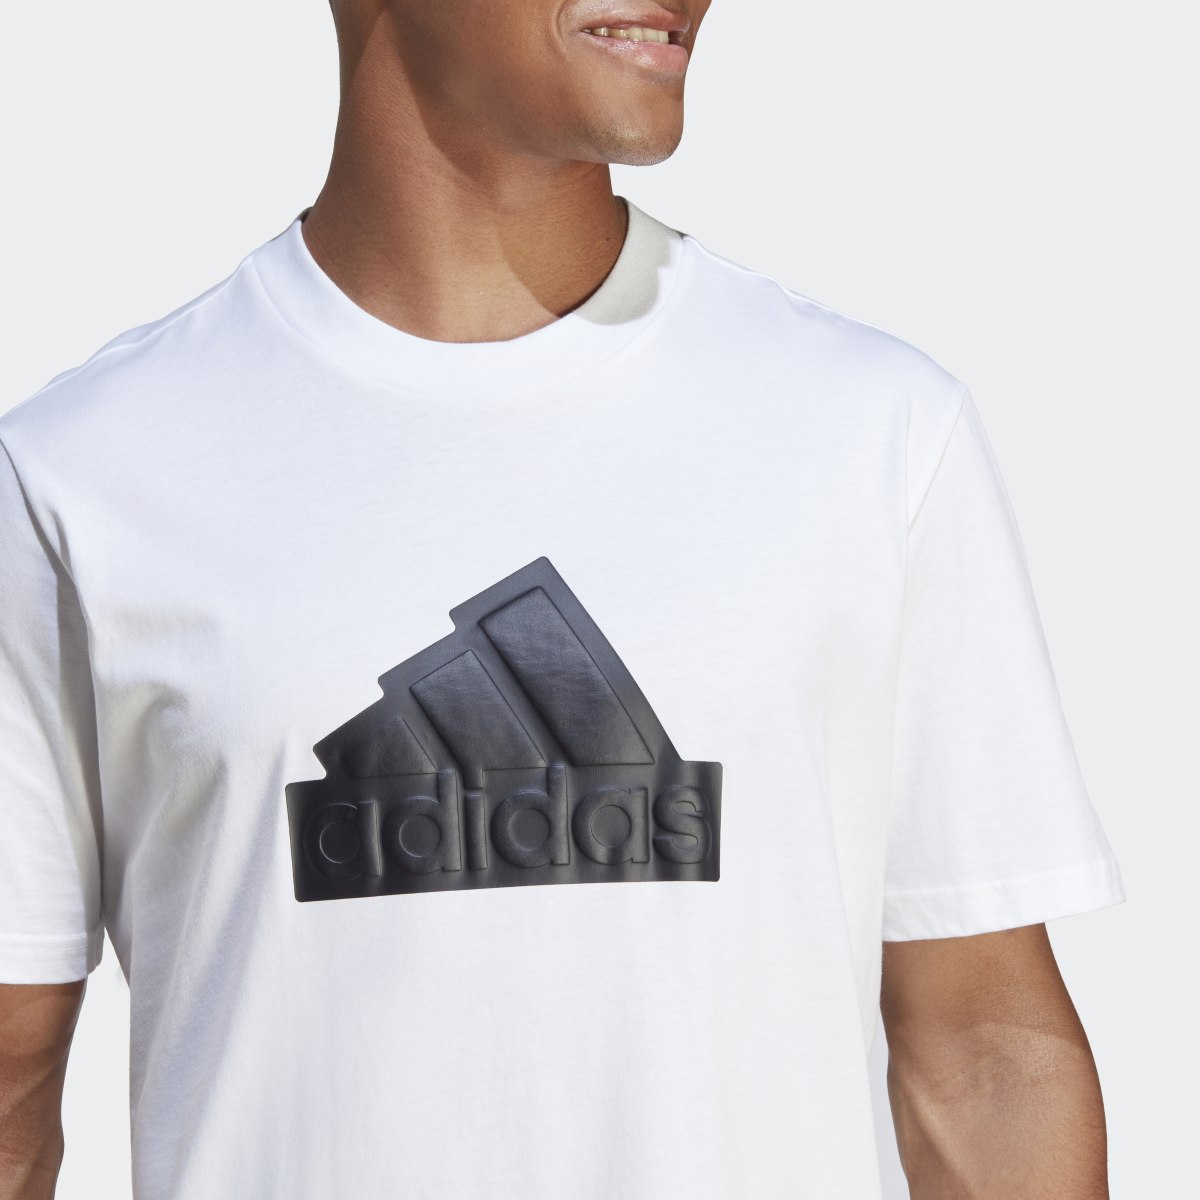 Adidas Camiseta Future Icons Badge of Sport. 7